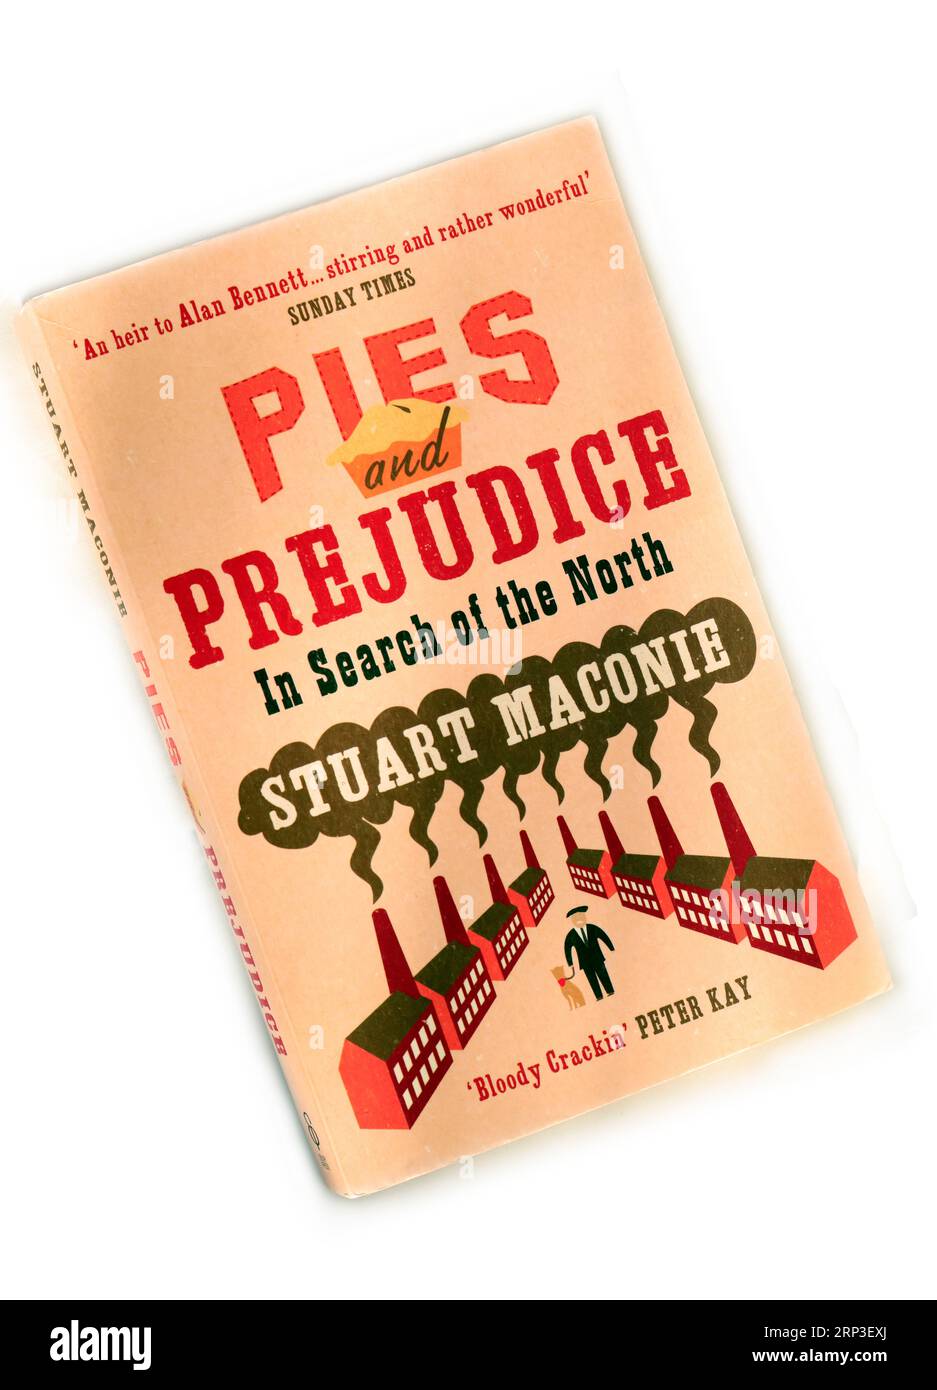 Torte e pregiudizi - in Search of the North di Stuart Maconie. Copertina libro, allestimento studio. Foto Stock